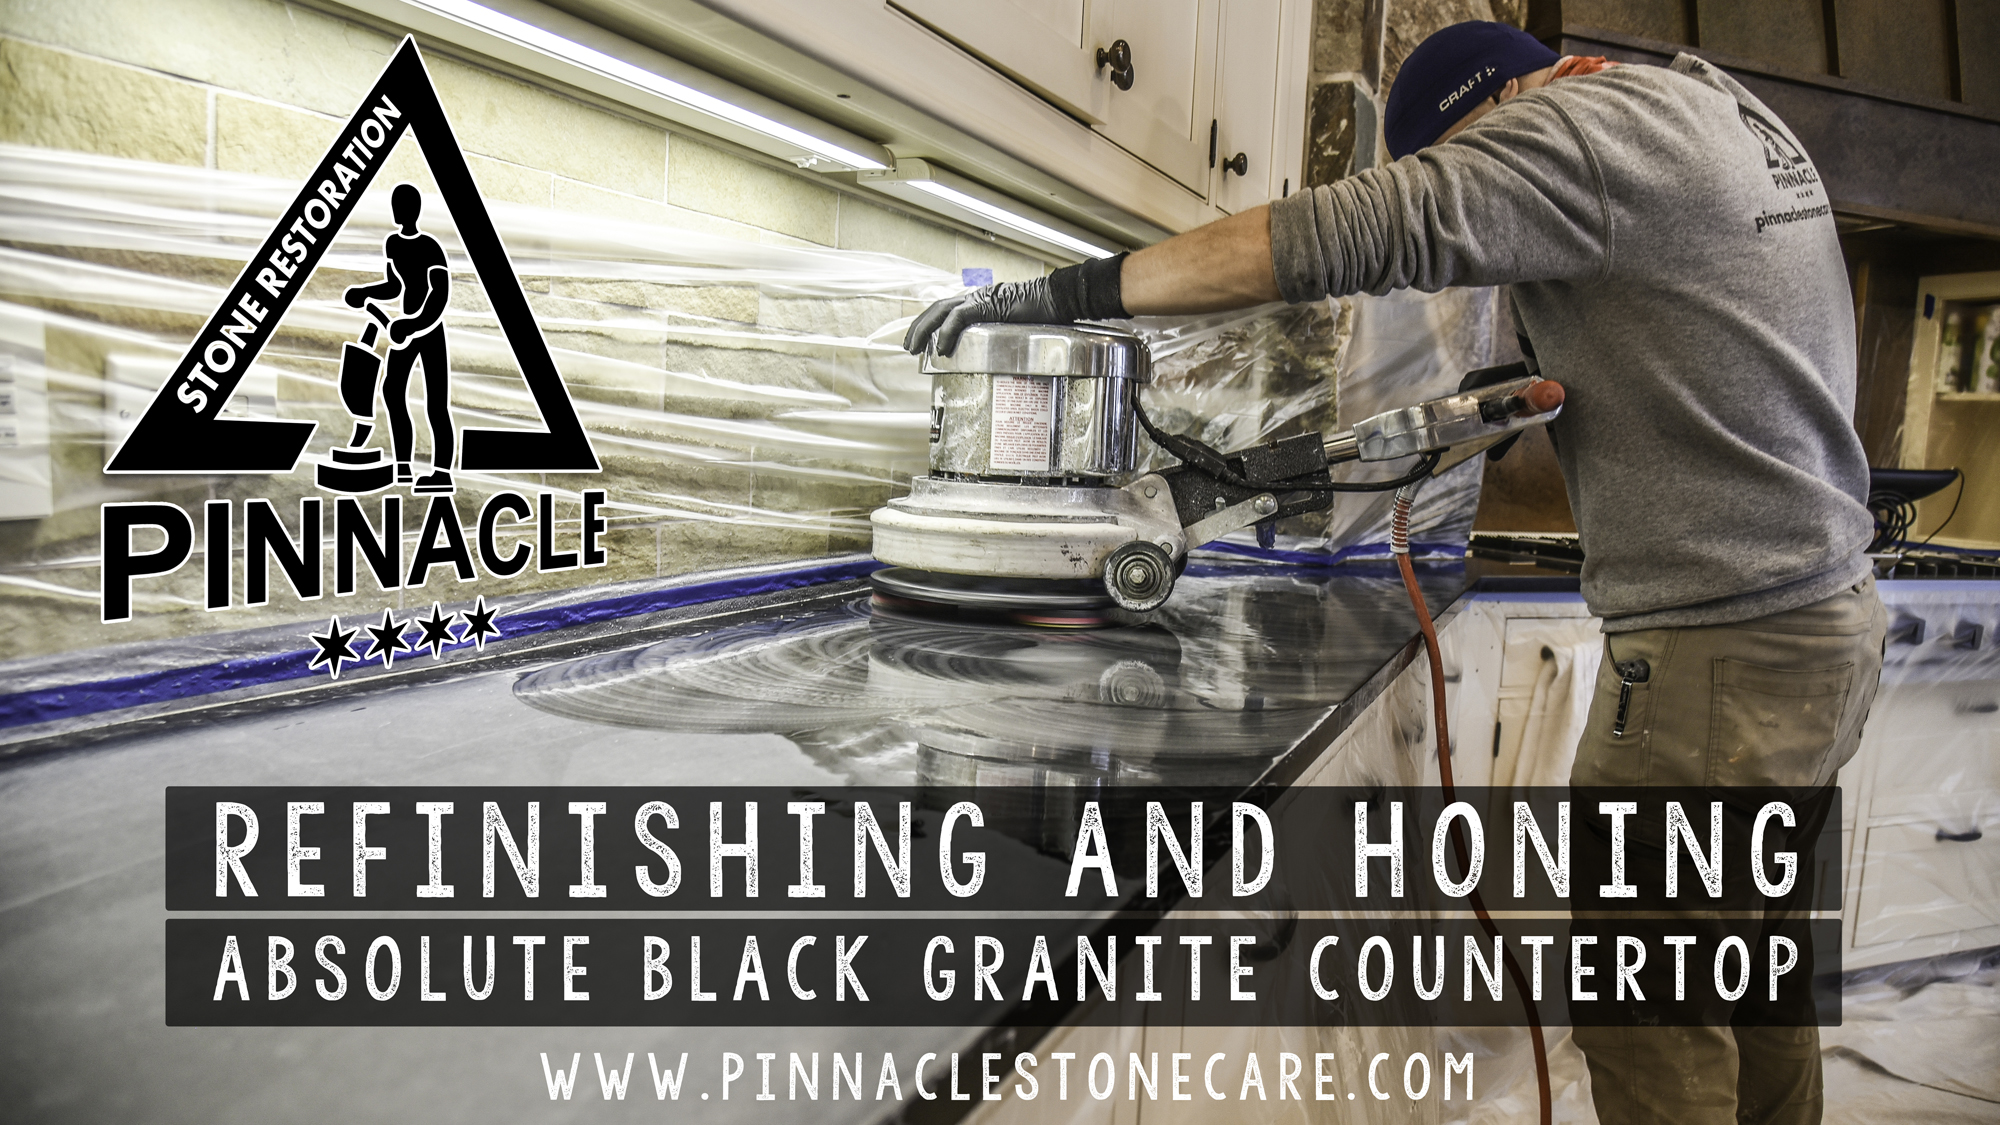 Absolute Black Granite Countertop Restoration